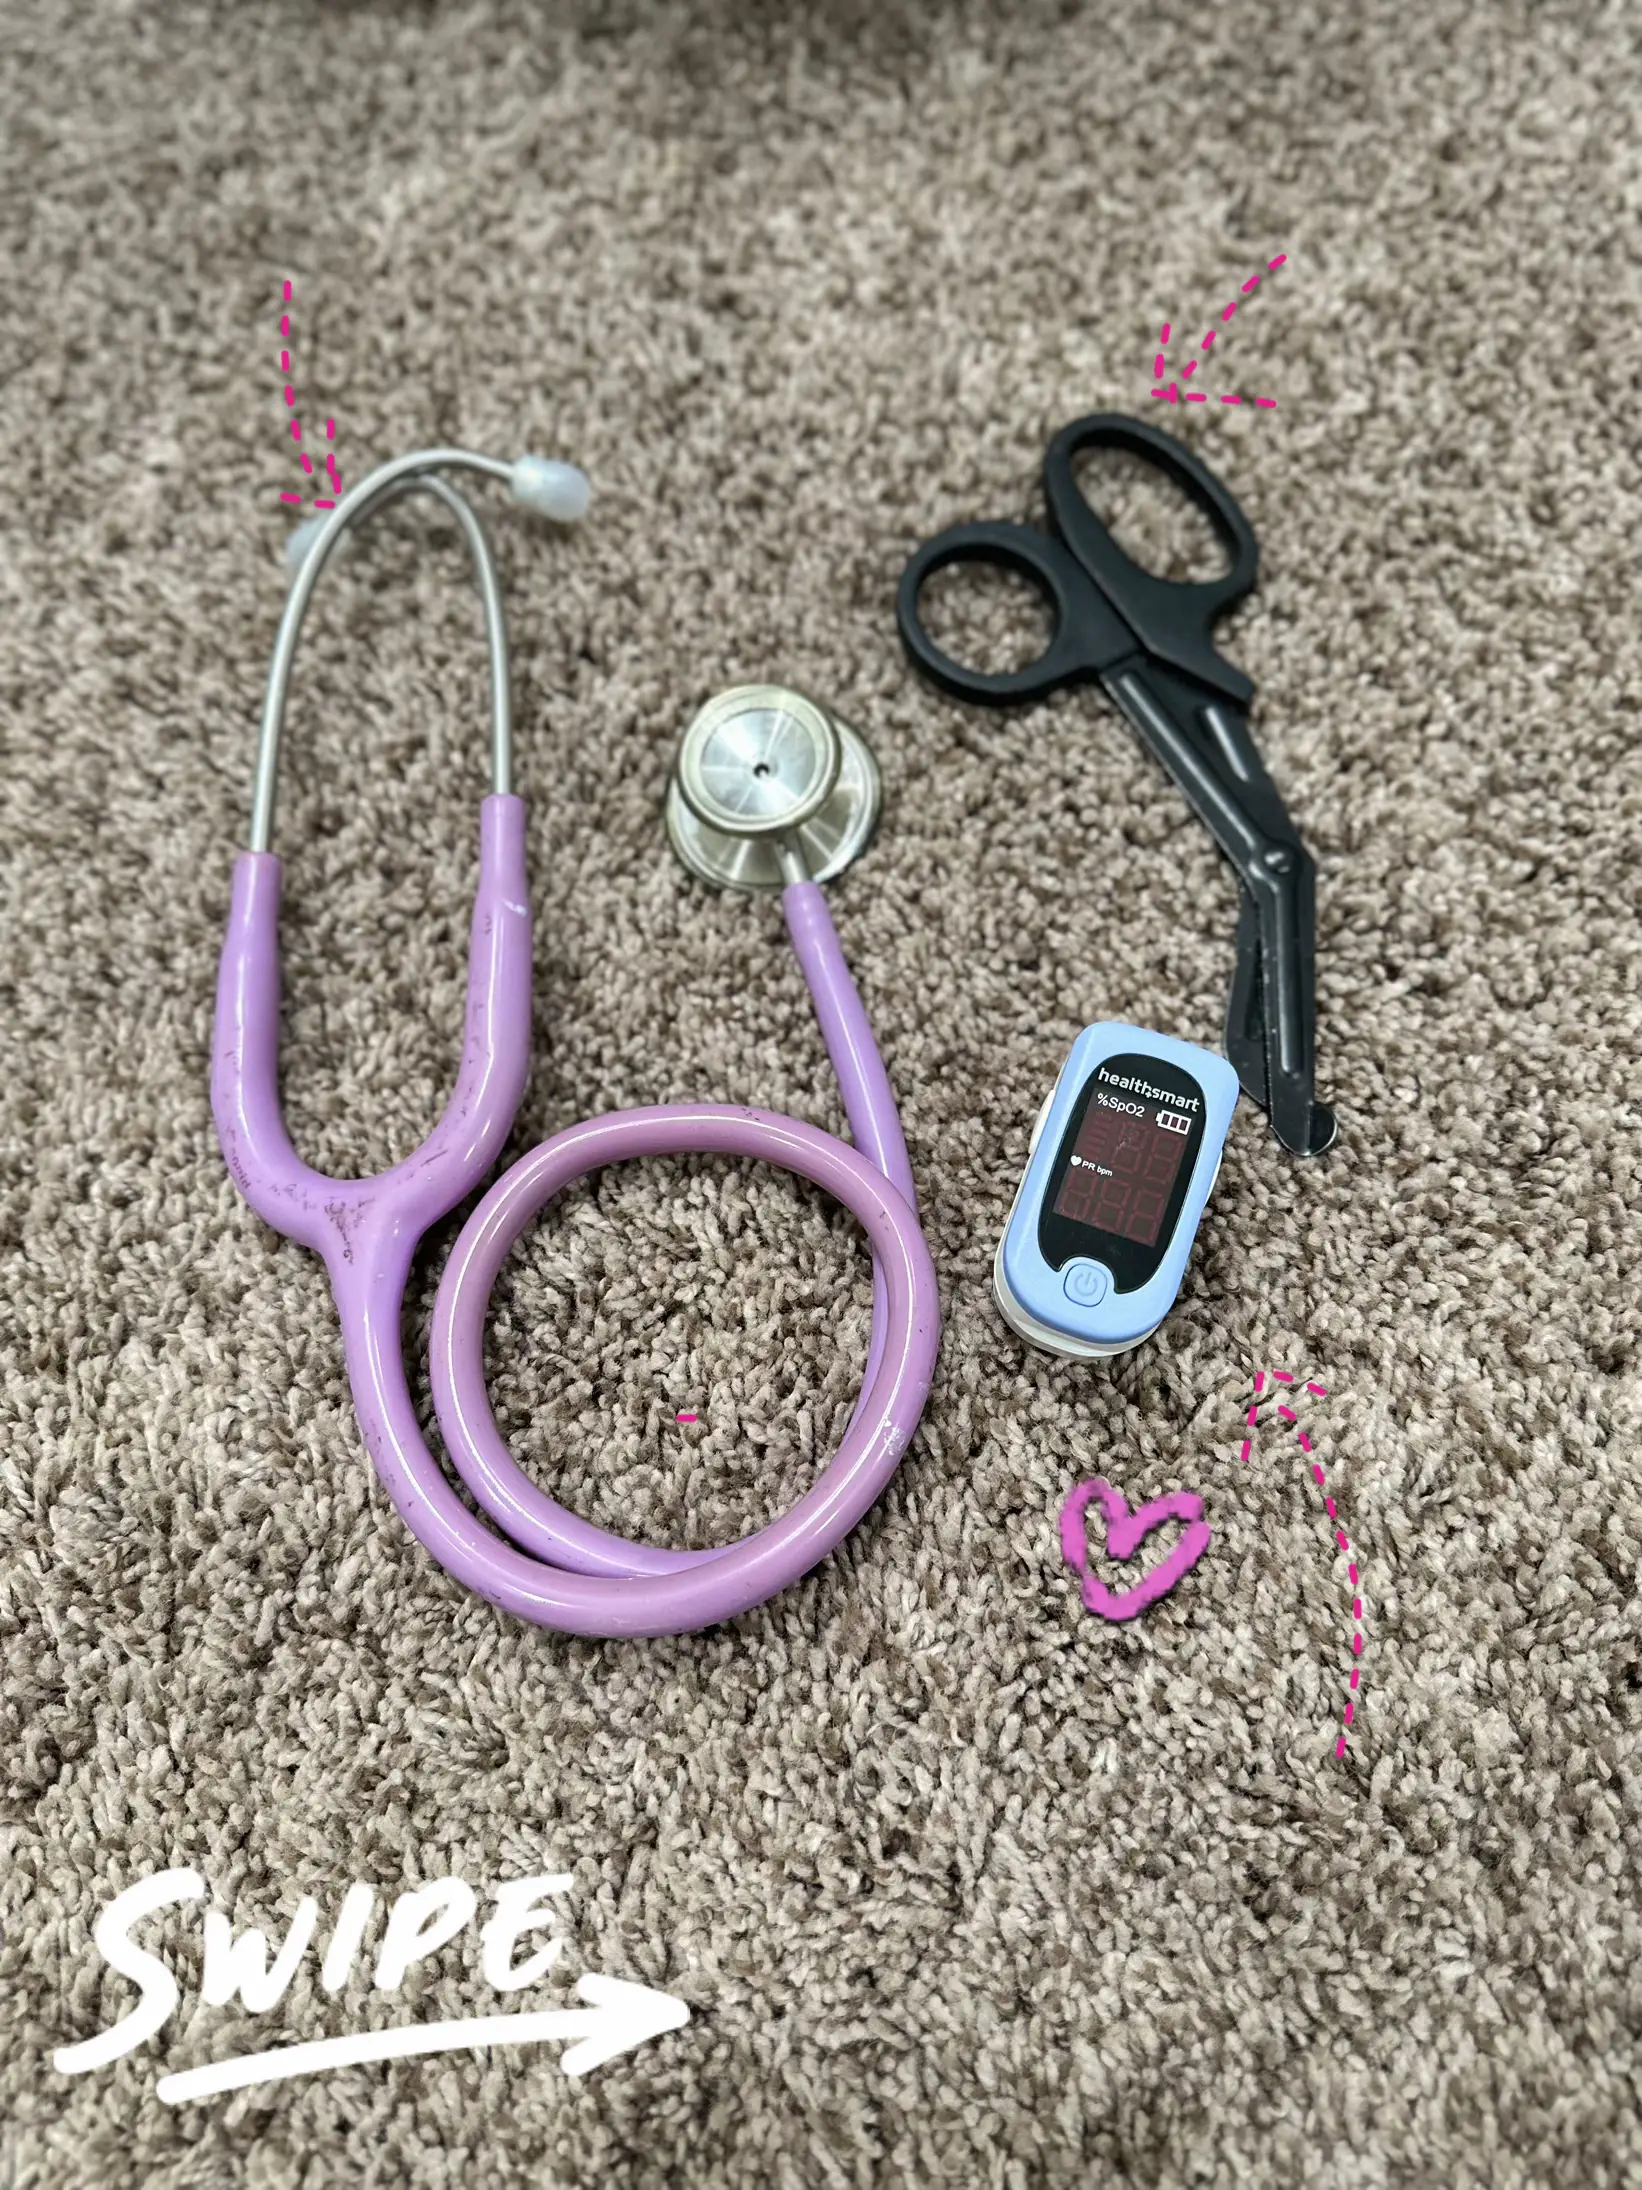 ER Stethoscope Heart Emergency Room White With Pink Felt Badge